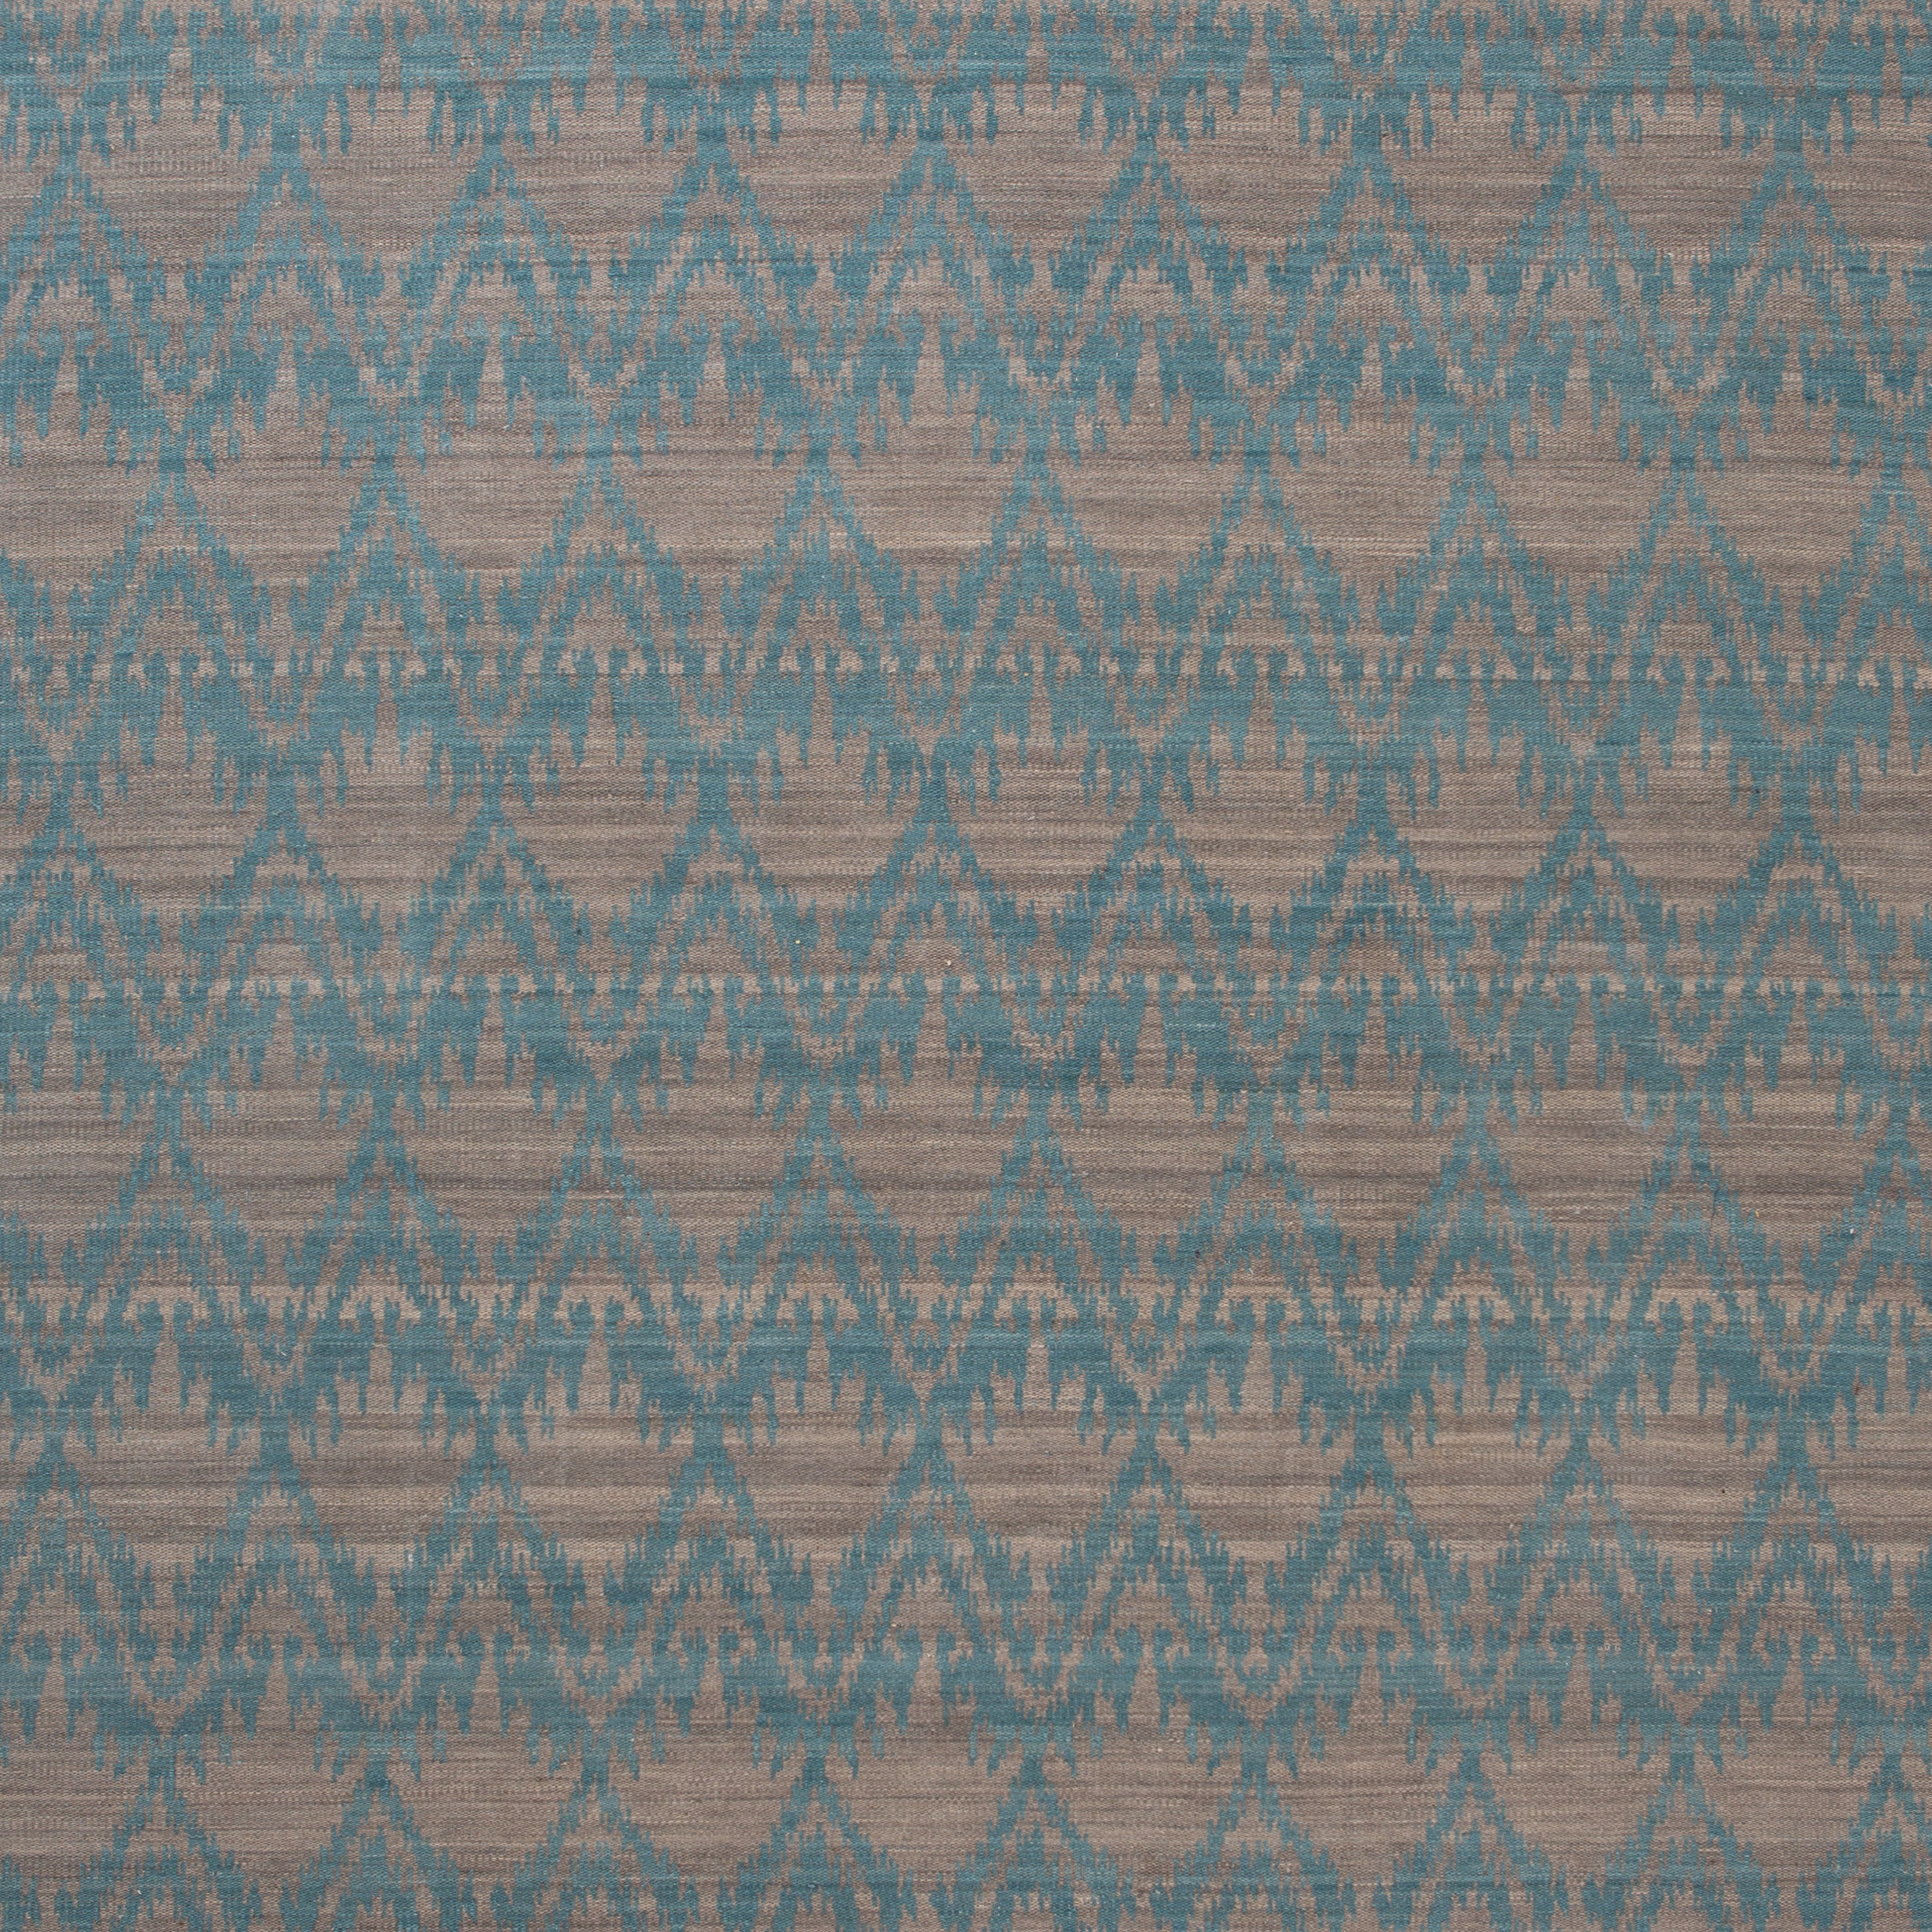 Blue Flatweave Wool Rug - 9'1" x 11'1"